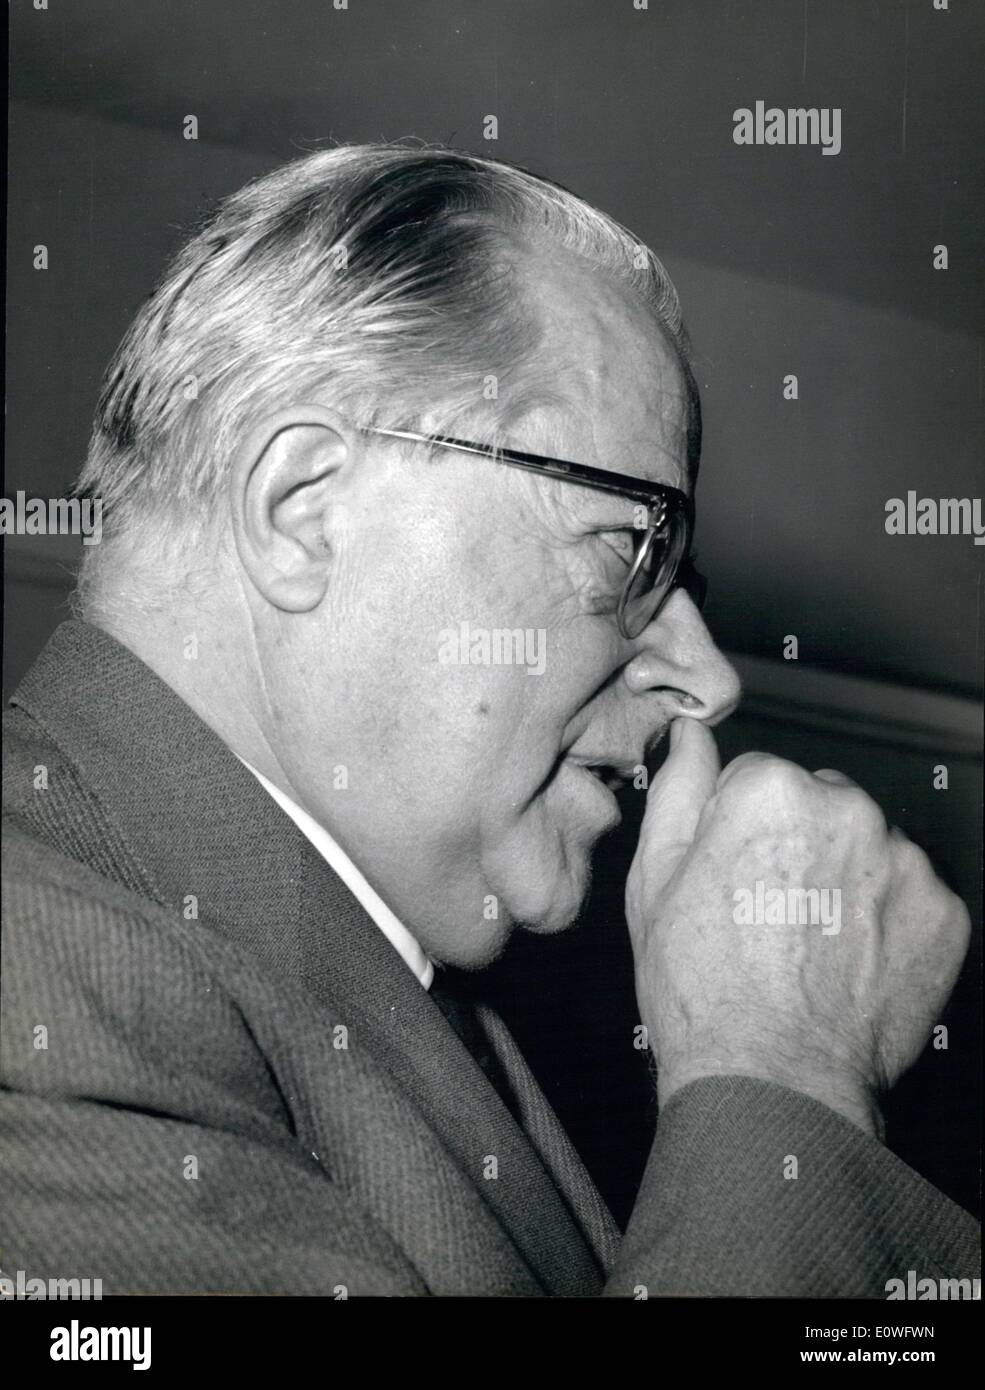 Nov. 11, 1962 - Su .Le Palmiro Togliatti leader del Partito Comunista Italiano tenere questa mattina una conferenza stampa nella sede della stampa estera a Roma, parlando con i giornalisti presenti alla conferenza sulla situazione internazionale. Foto Stock